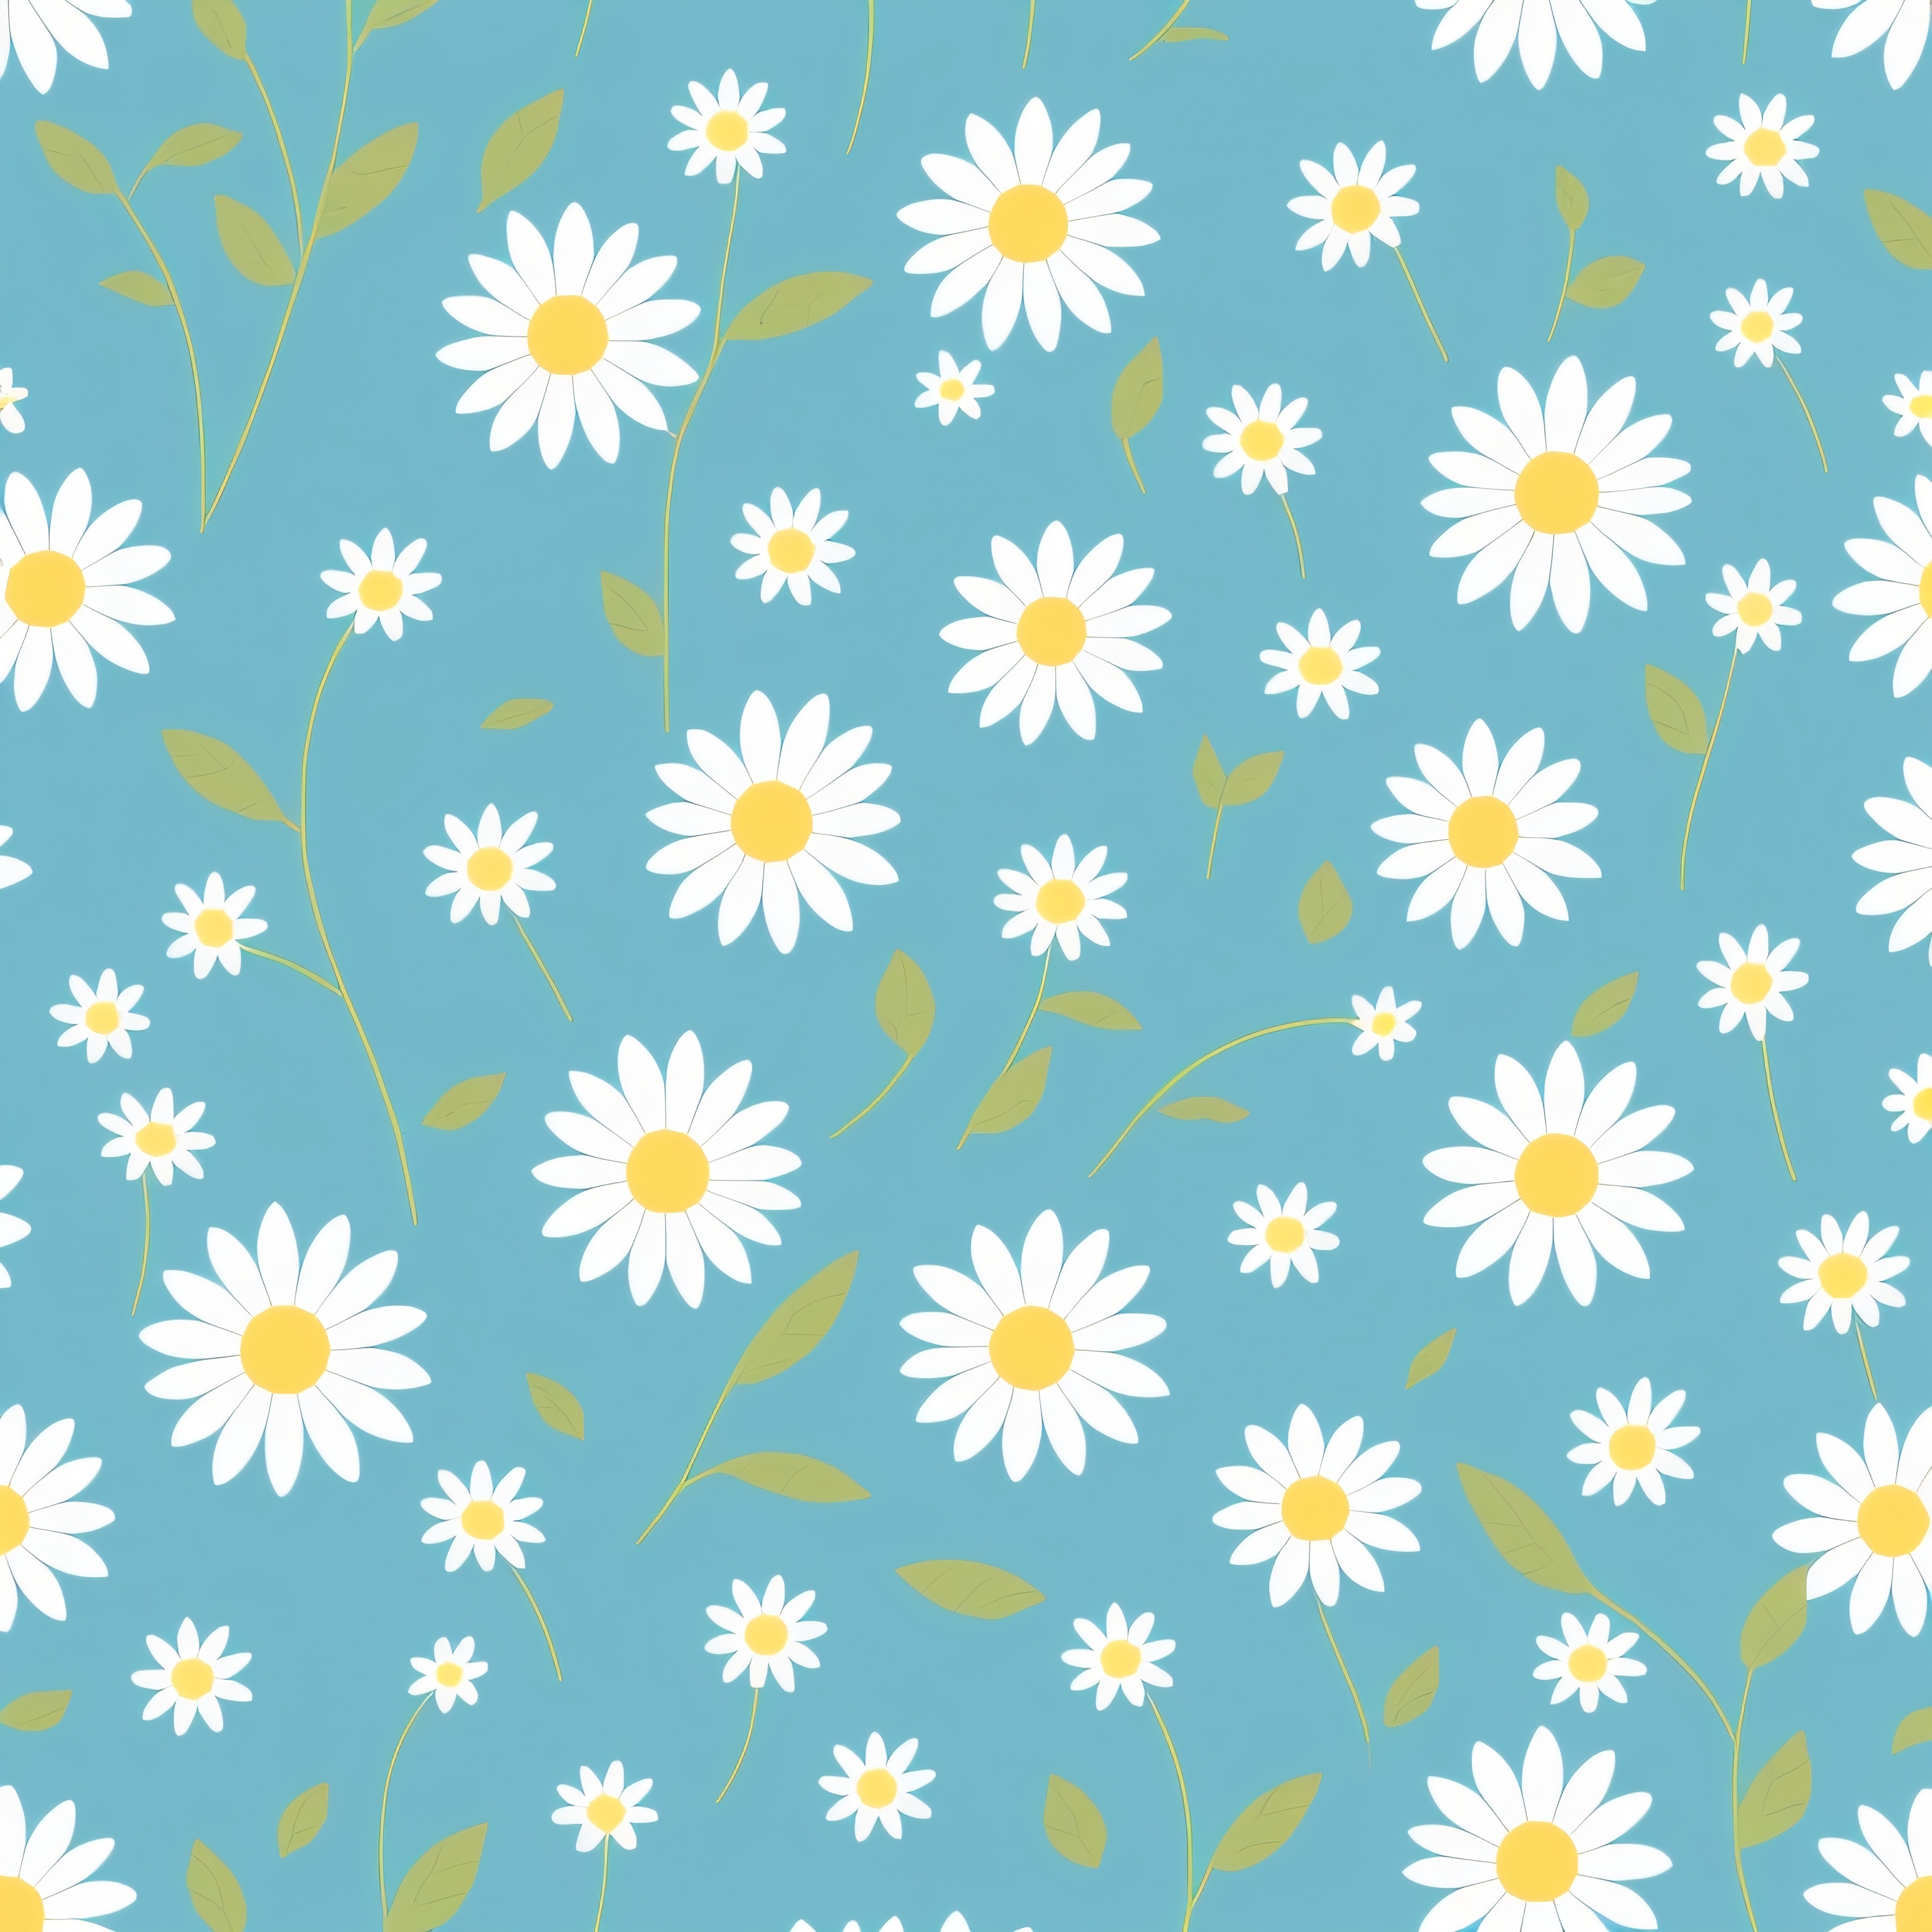 Flower pattern graphic design